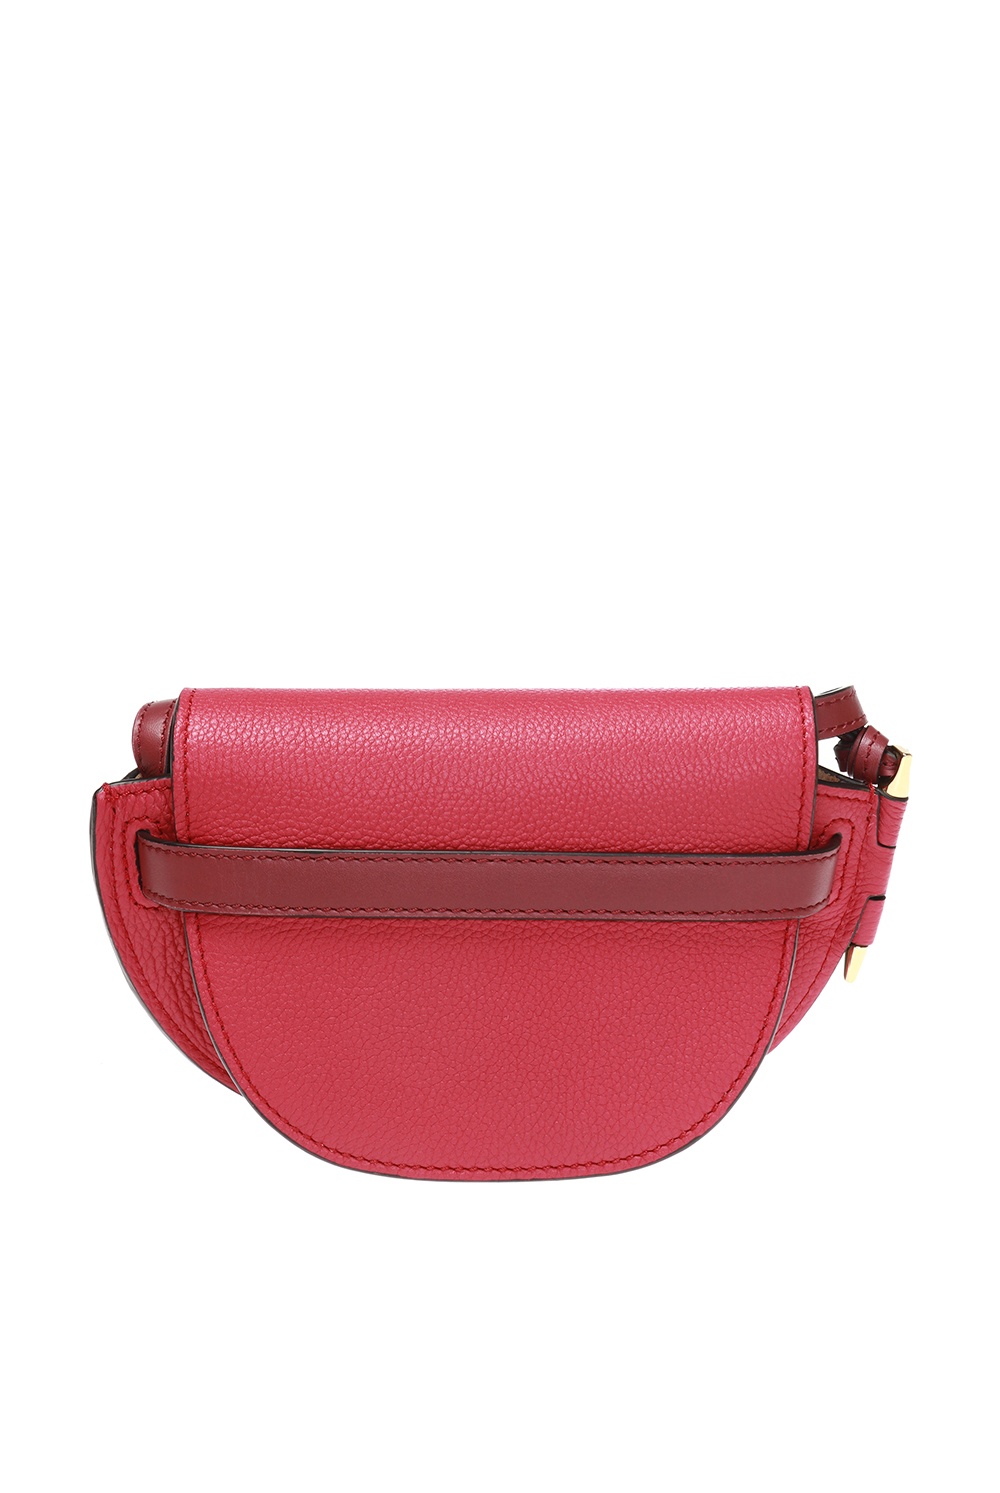 LOEWE Gate Pocket Loewe gate pocket shoulder bag Pink Boxed w/storagebag